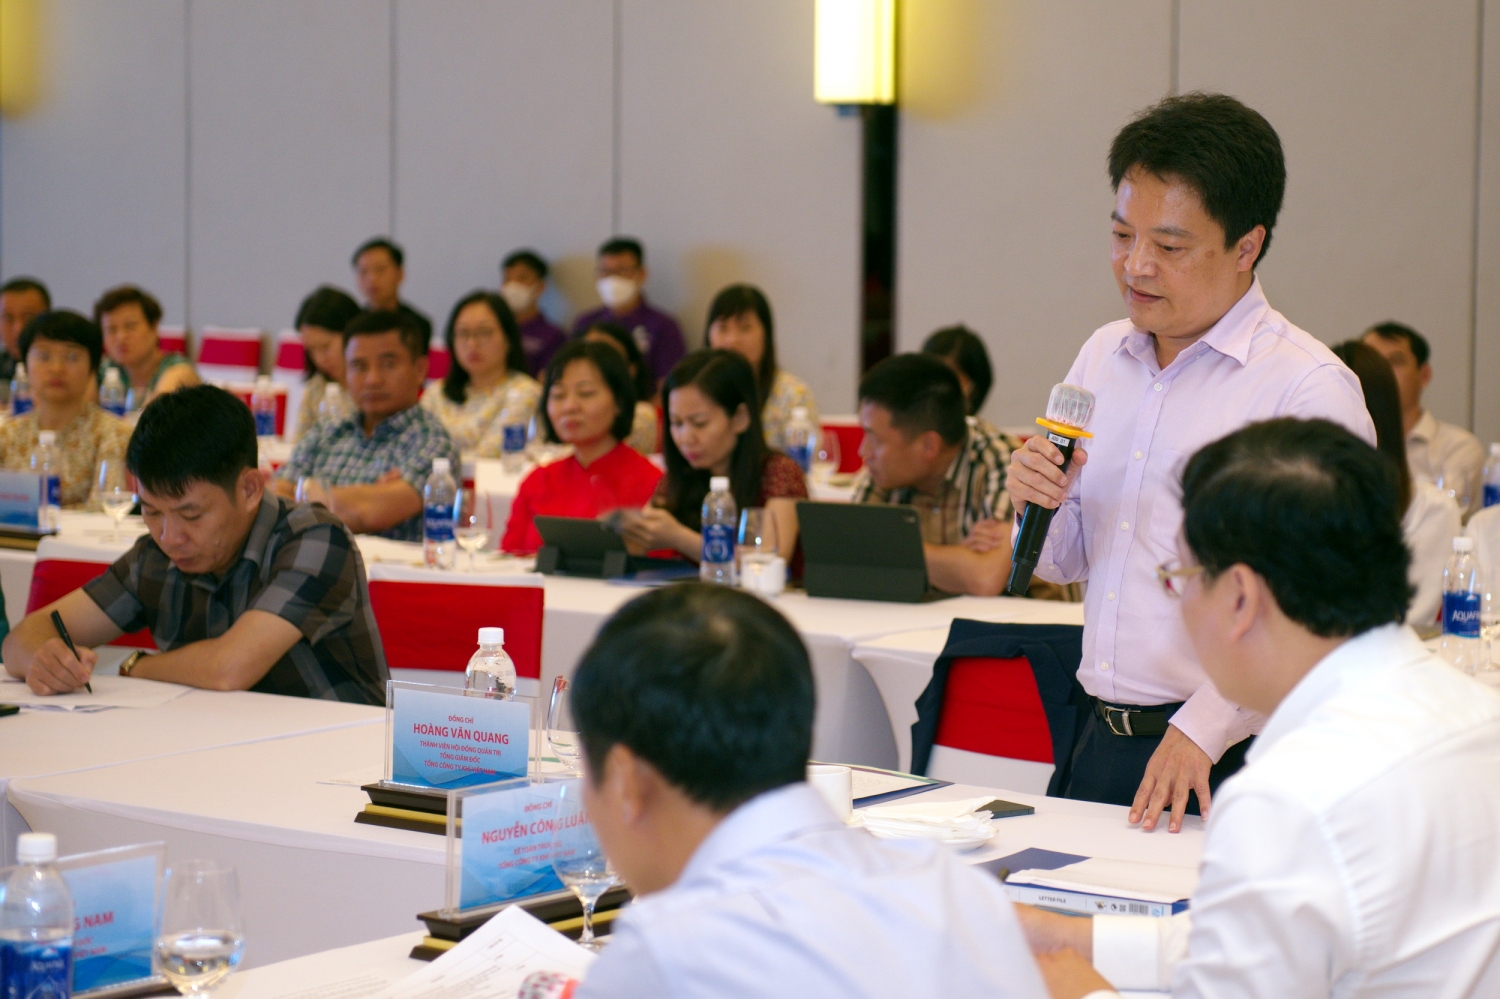 Ông Hoàng Văn Quang – Tổng giám đốc PV GAS phát biểu yêu cầu công tác Tài chính Kế toán PV GAS cần tập trung vào một số nhiệm vụ trọng tâm trong thời gian tới